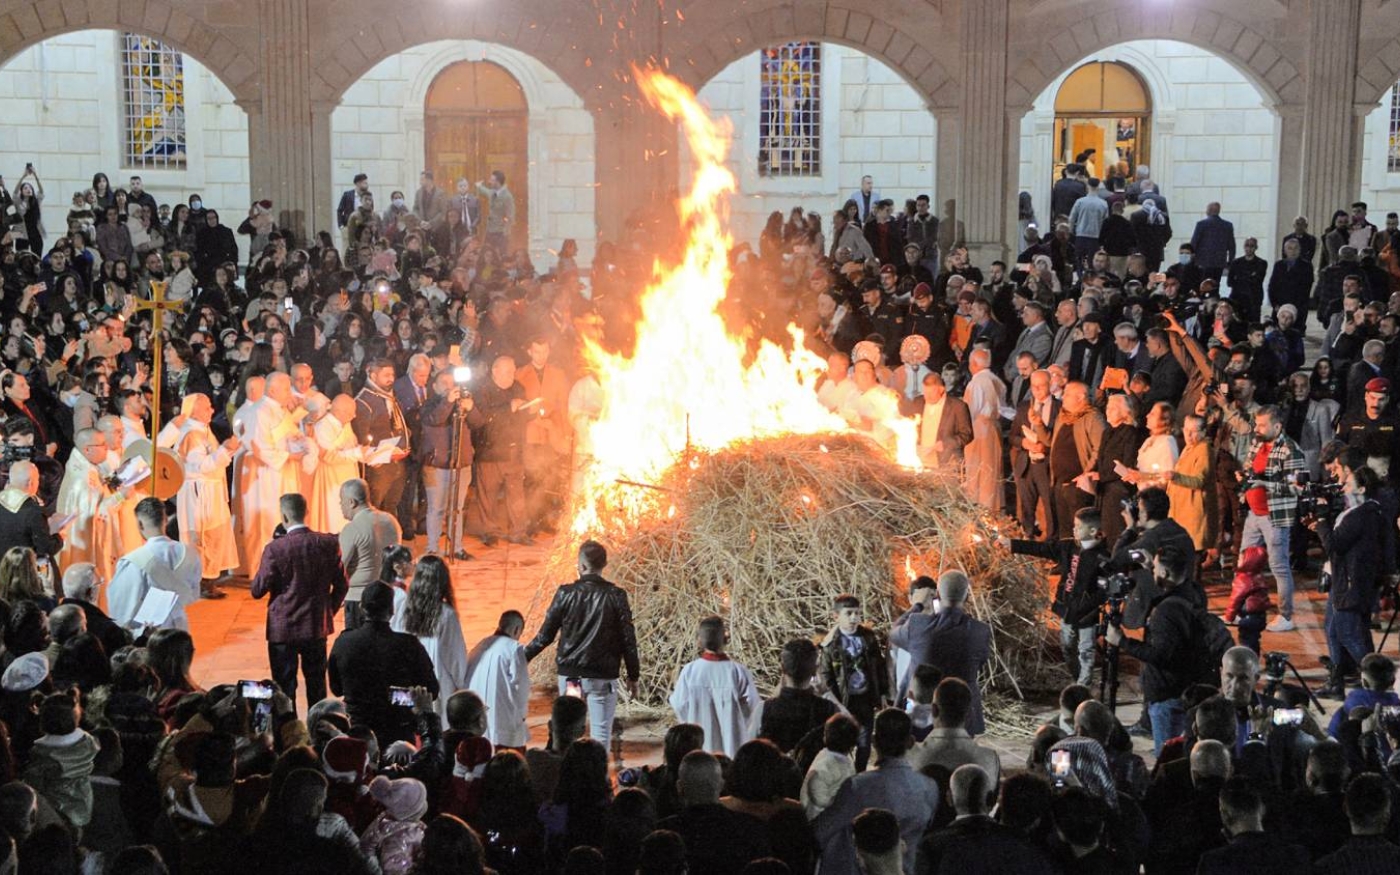 Les cendres restantes après le traditionnel feu de joie de Noël déterminent si l’année à venir sera prospère (AFP)